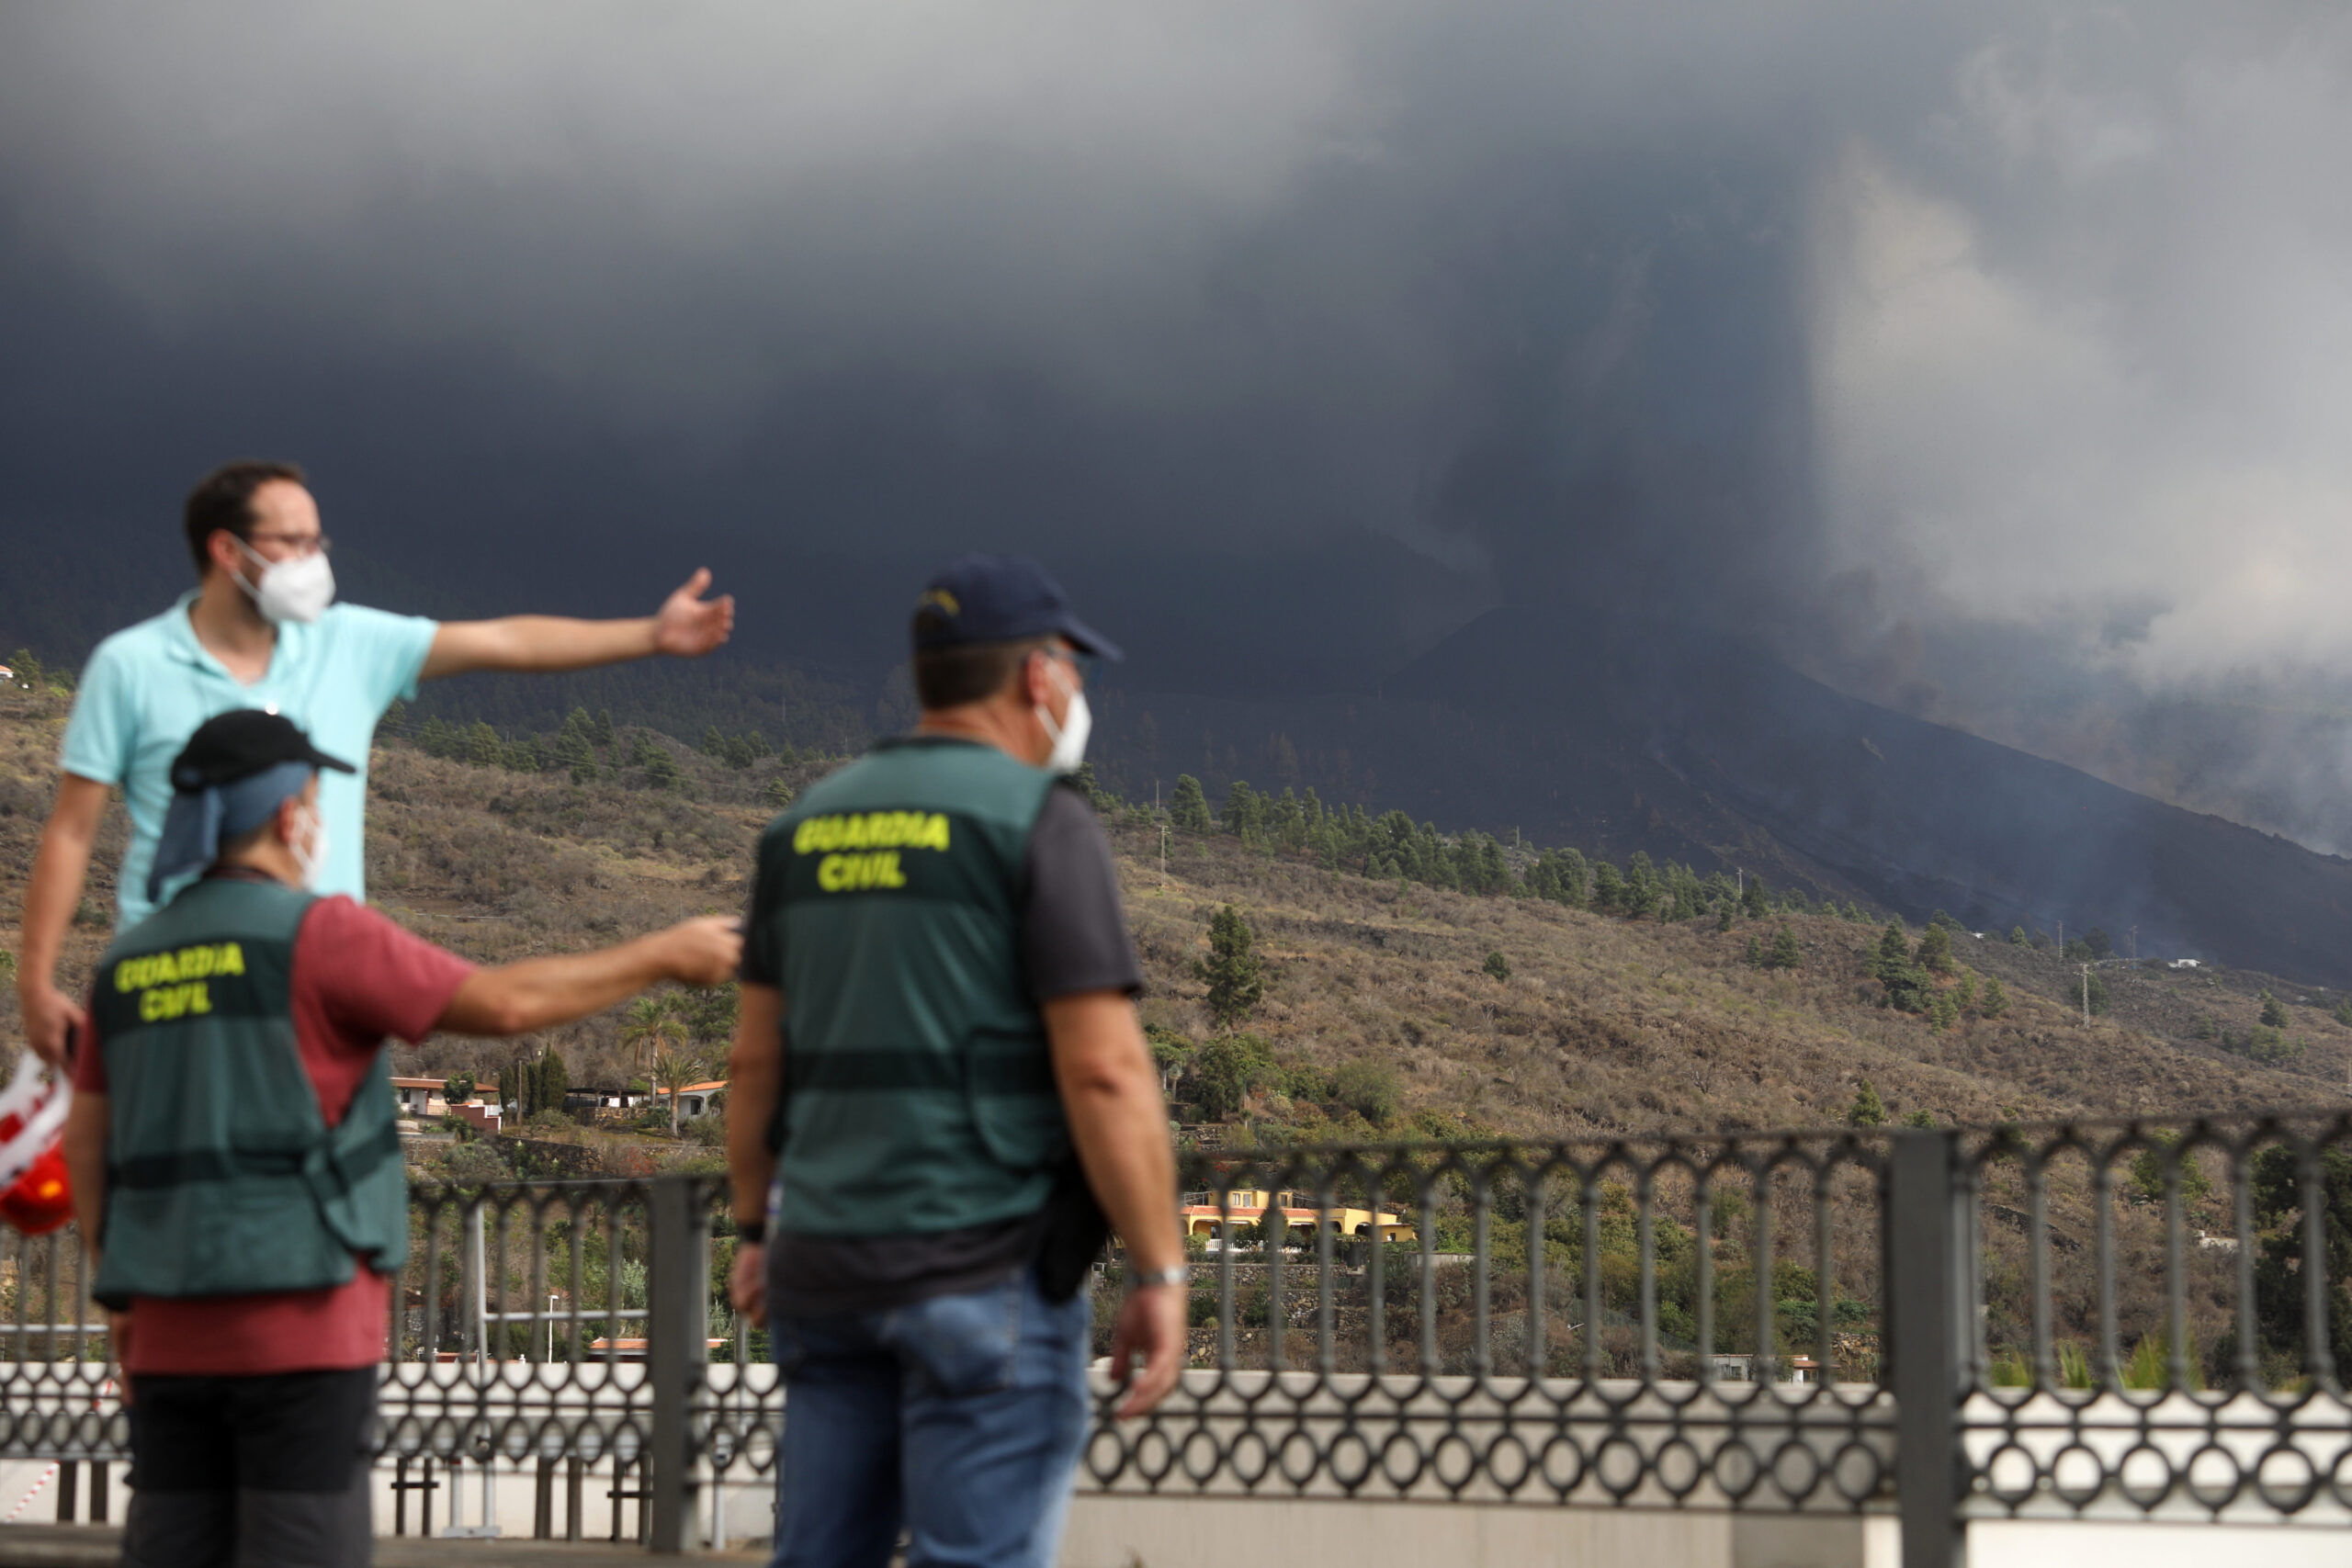 Medio centenar de guardias civiles denuncian impagos de pluses por trabajar en La Palma